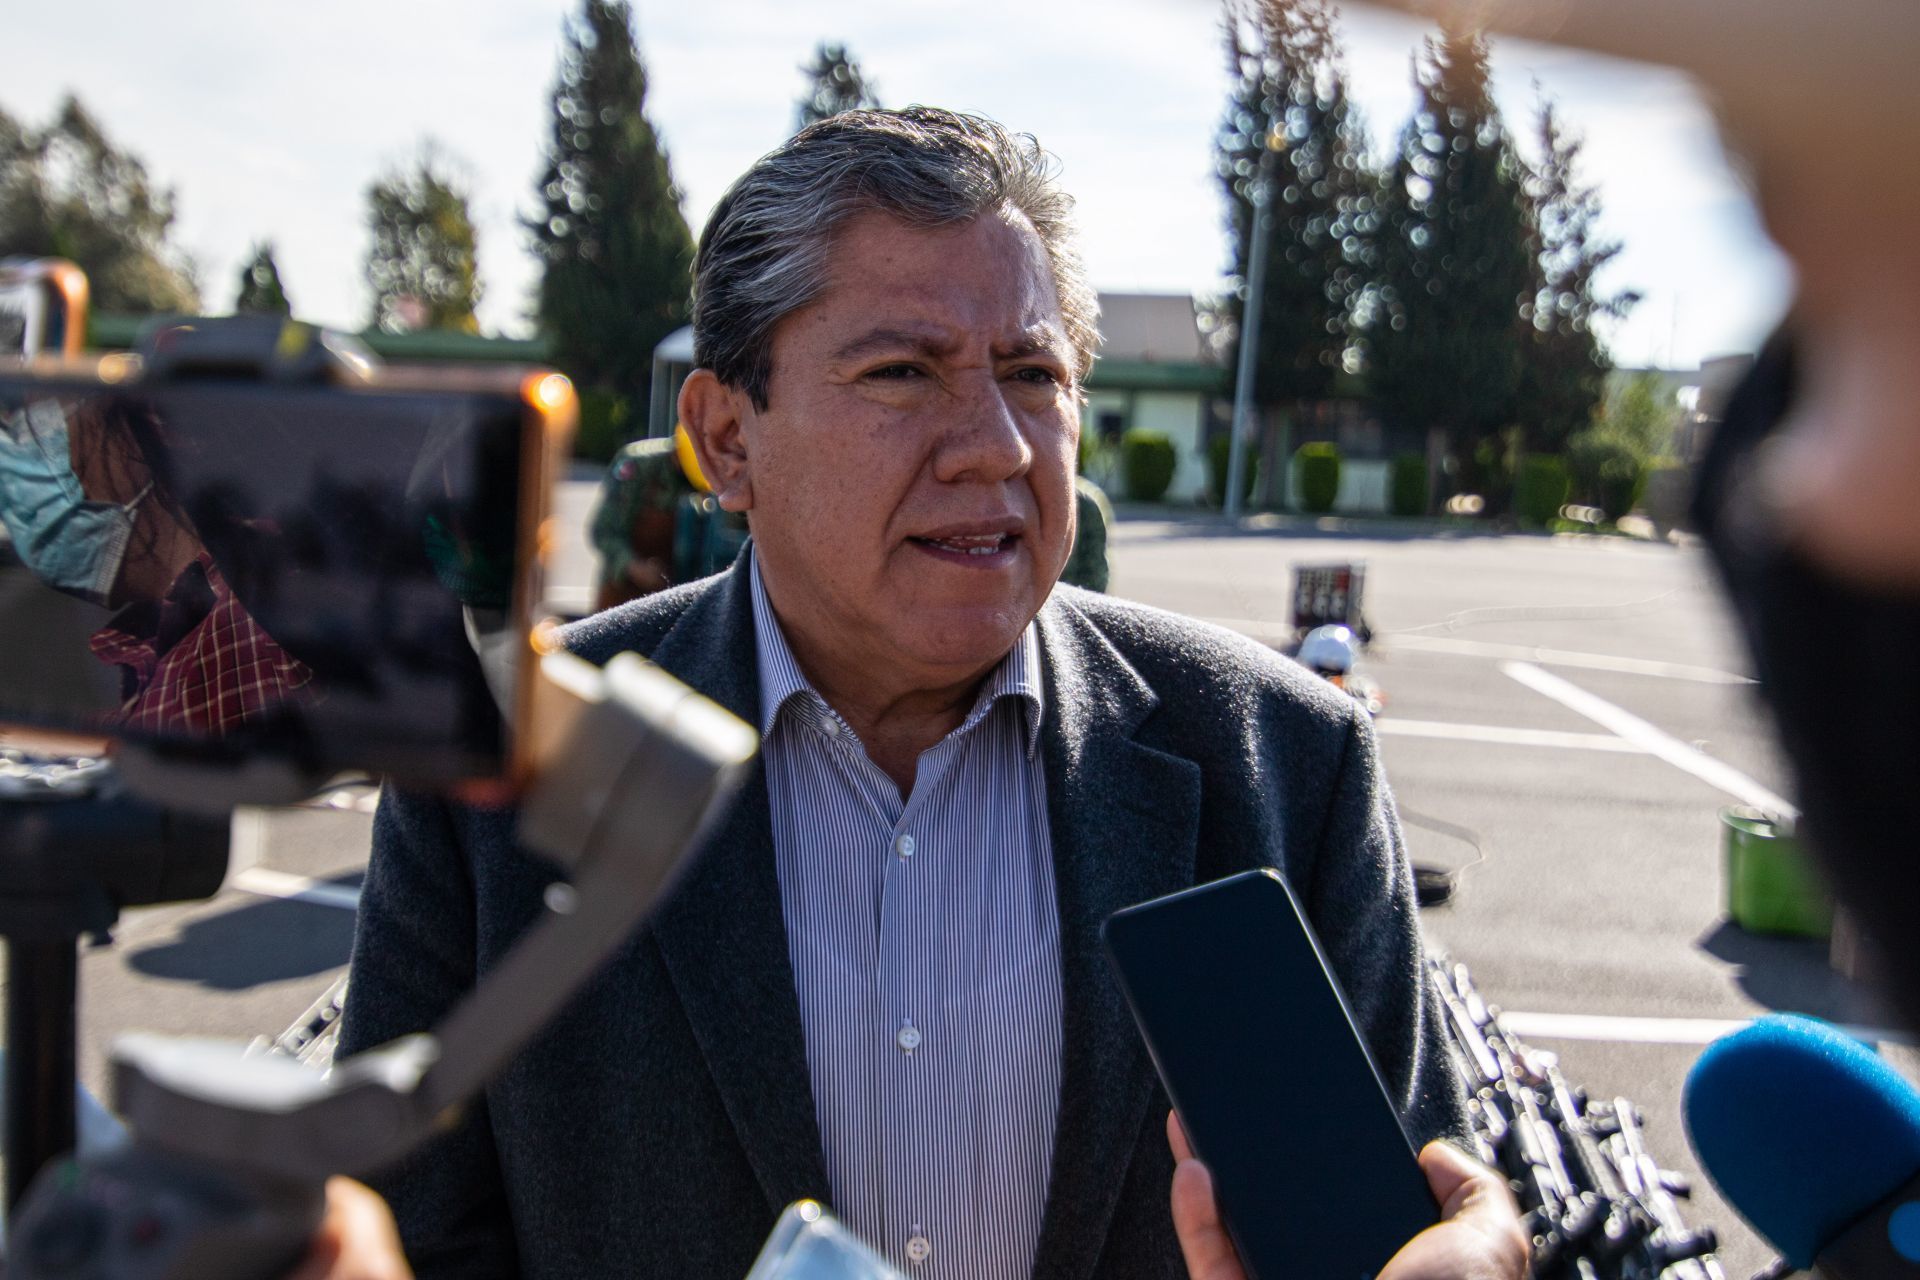 El gobernador de Zacatecas, David Monreal, expresó su desacuerdo con la suspensión de clases presenciales a raíz de la ola de violencia del pasado fin de semana. (FOTO: ADOLFO VLADIMIR /CUARTOSCURO)